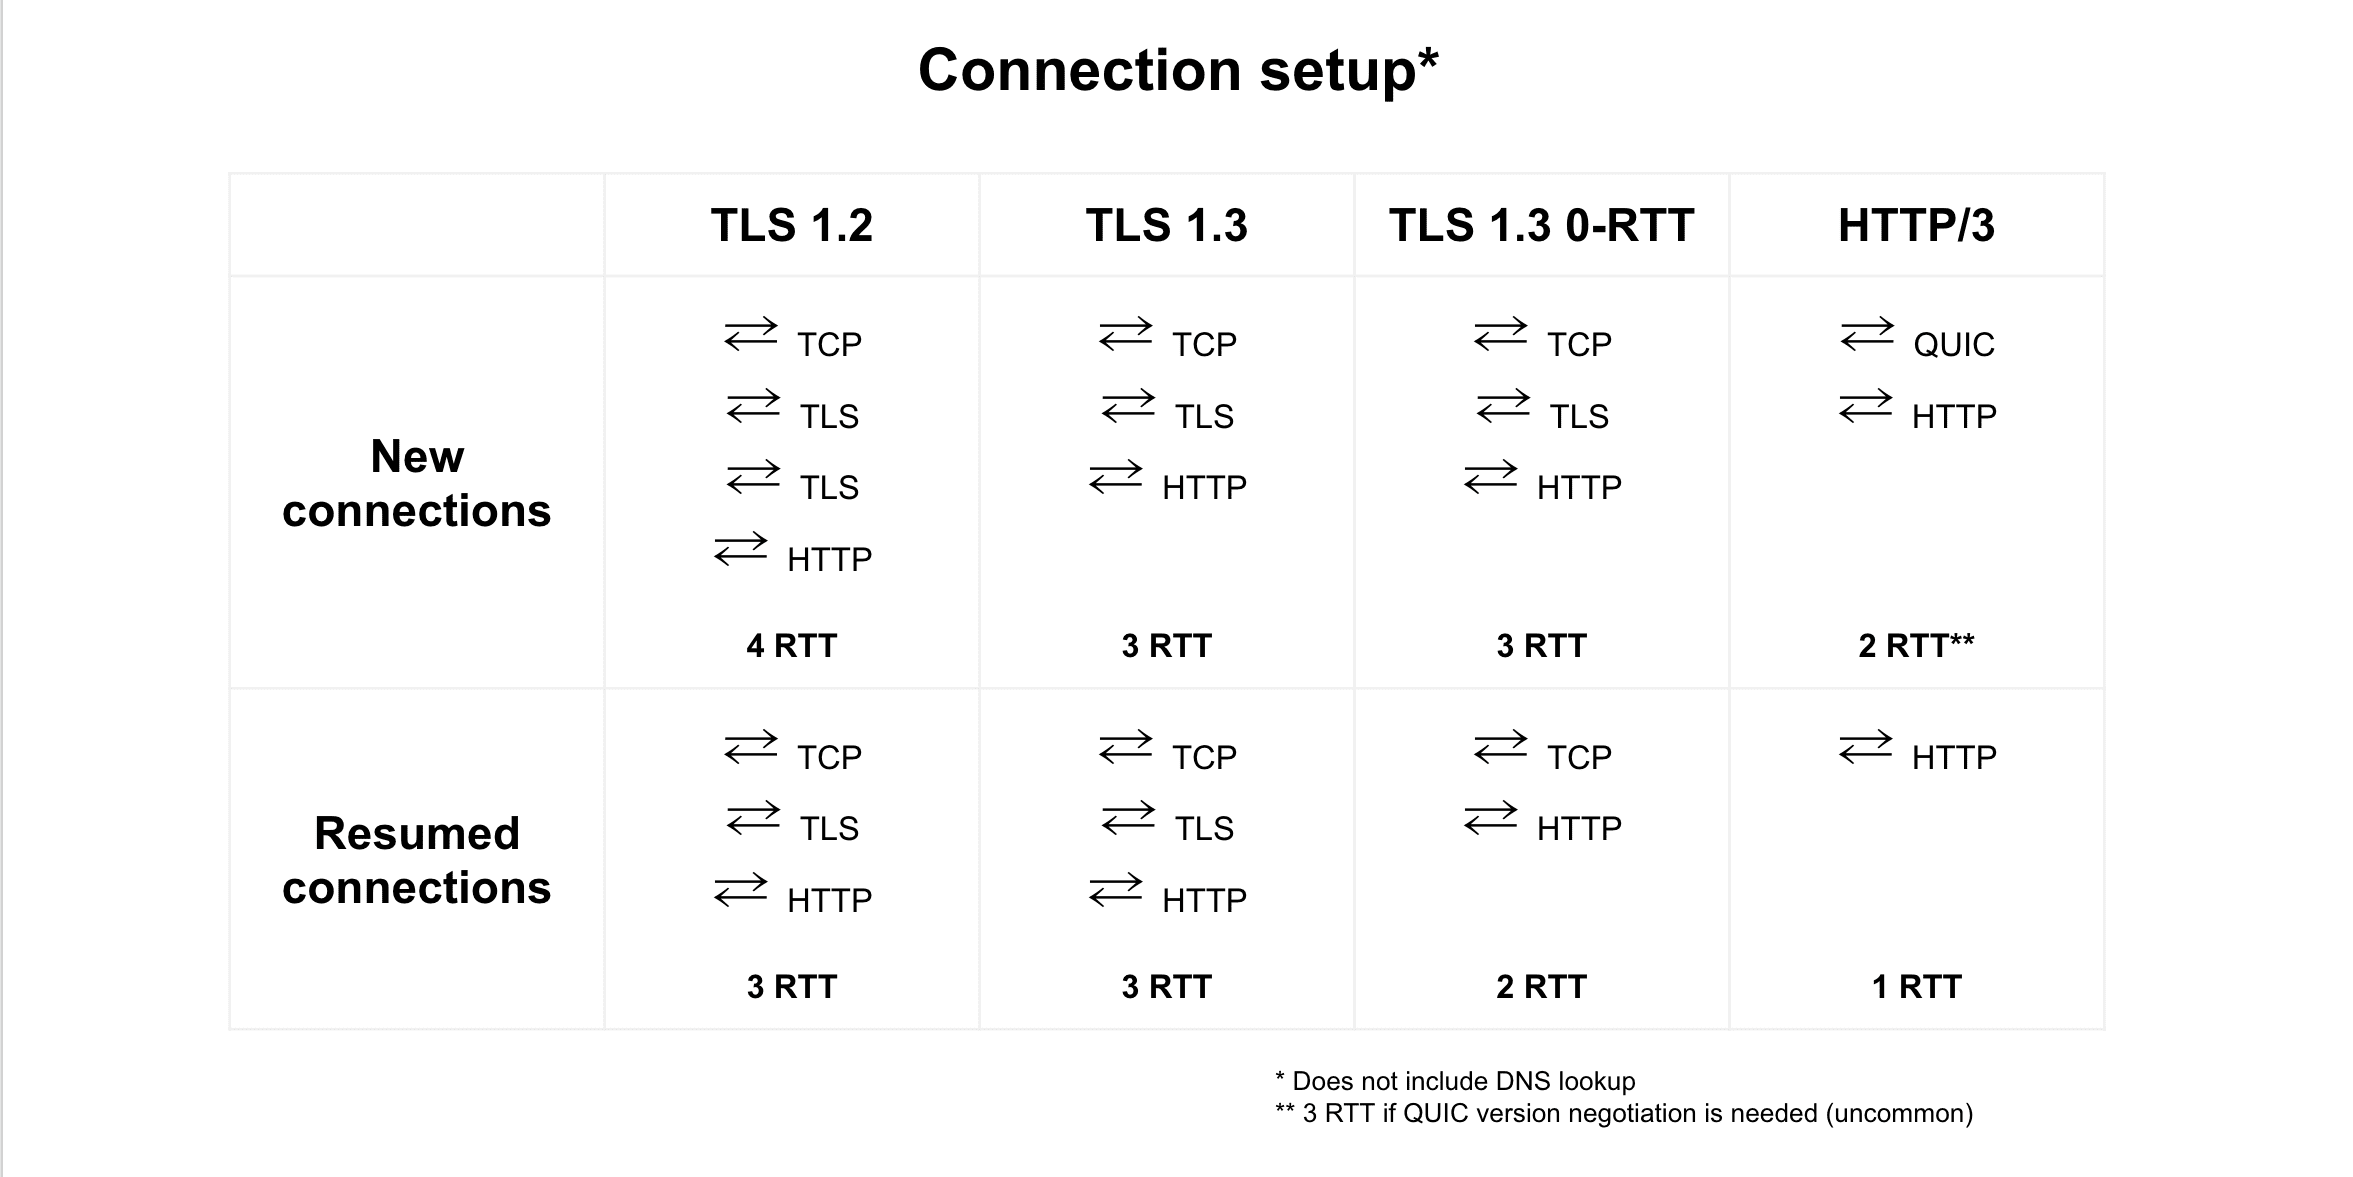 مقارنة استئناف الاتصال بين TLS 1.2 وTLS 1.3 وTLS 1.3 0-RTT وHTTP/3